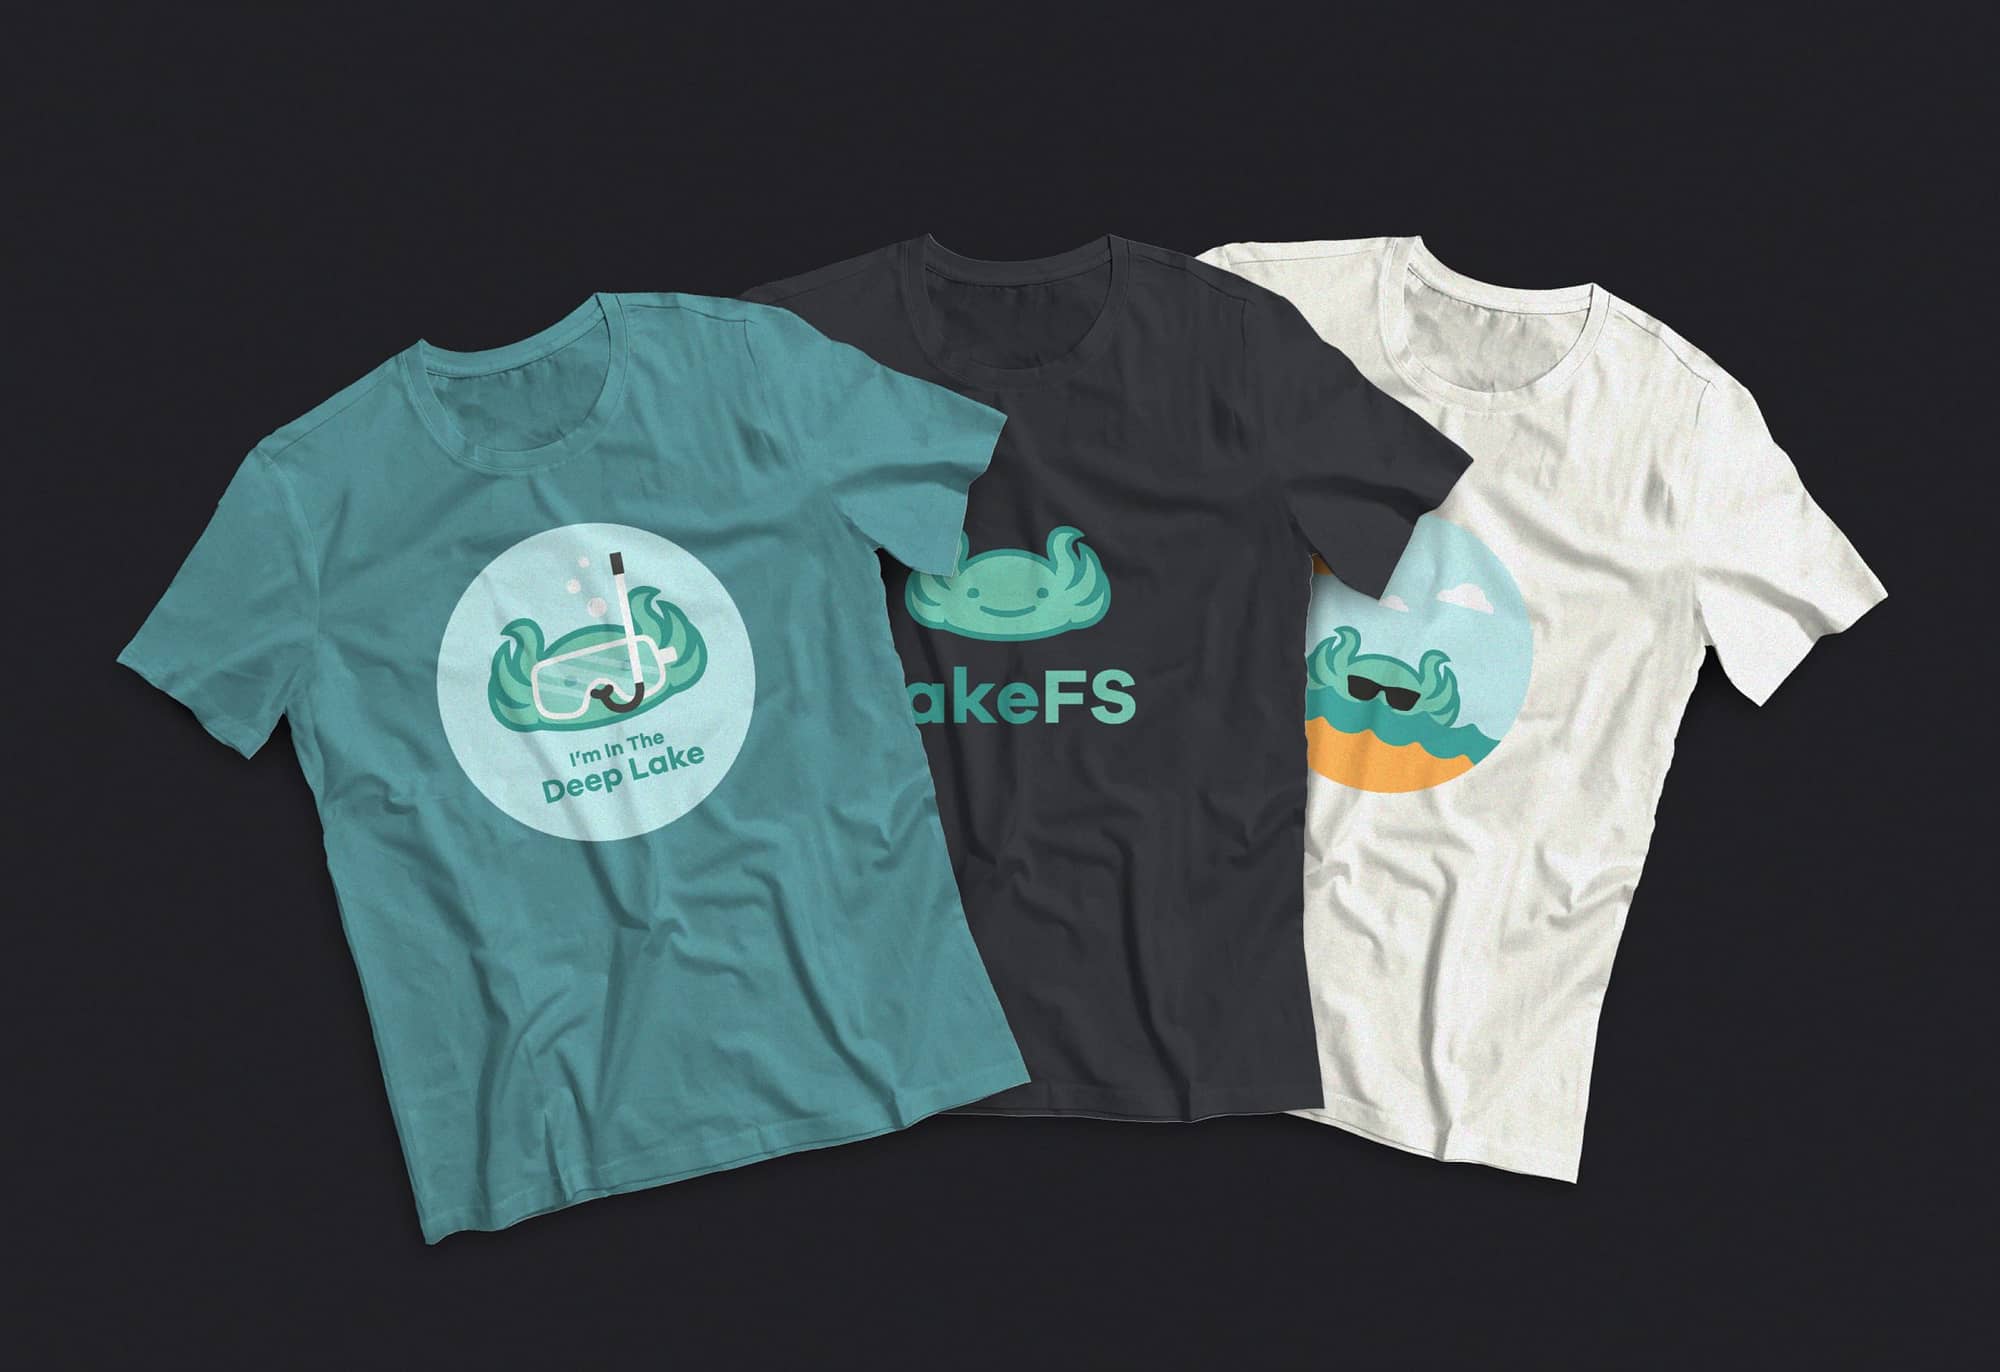 LakeFS branding by hello